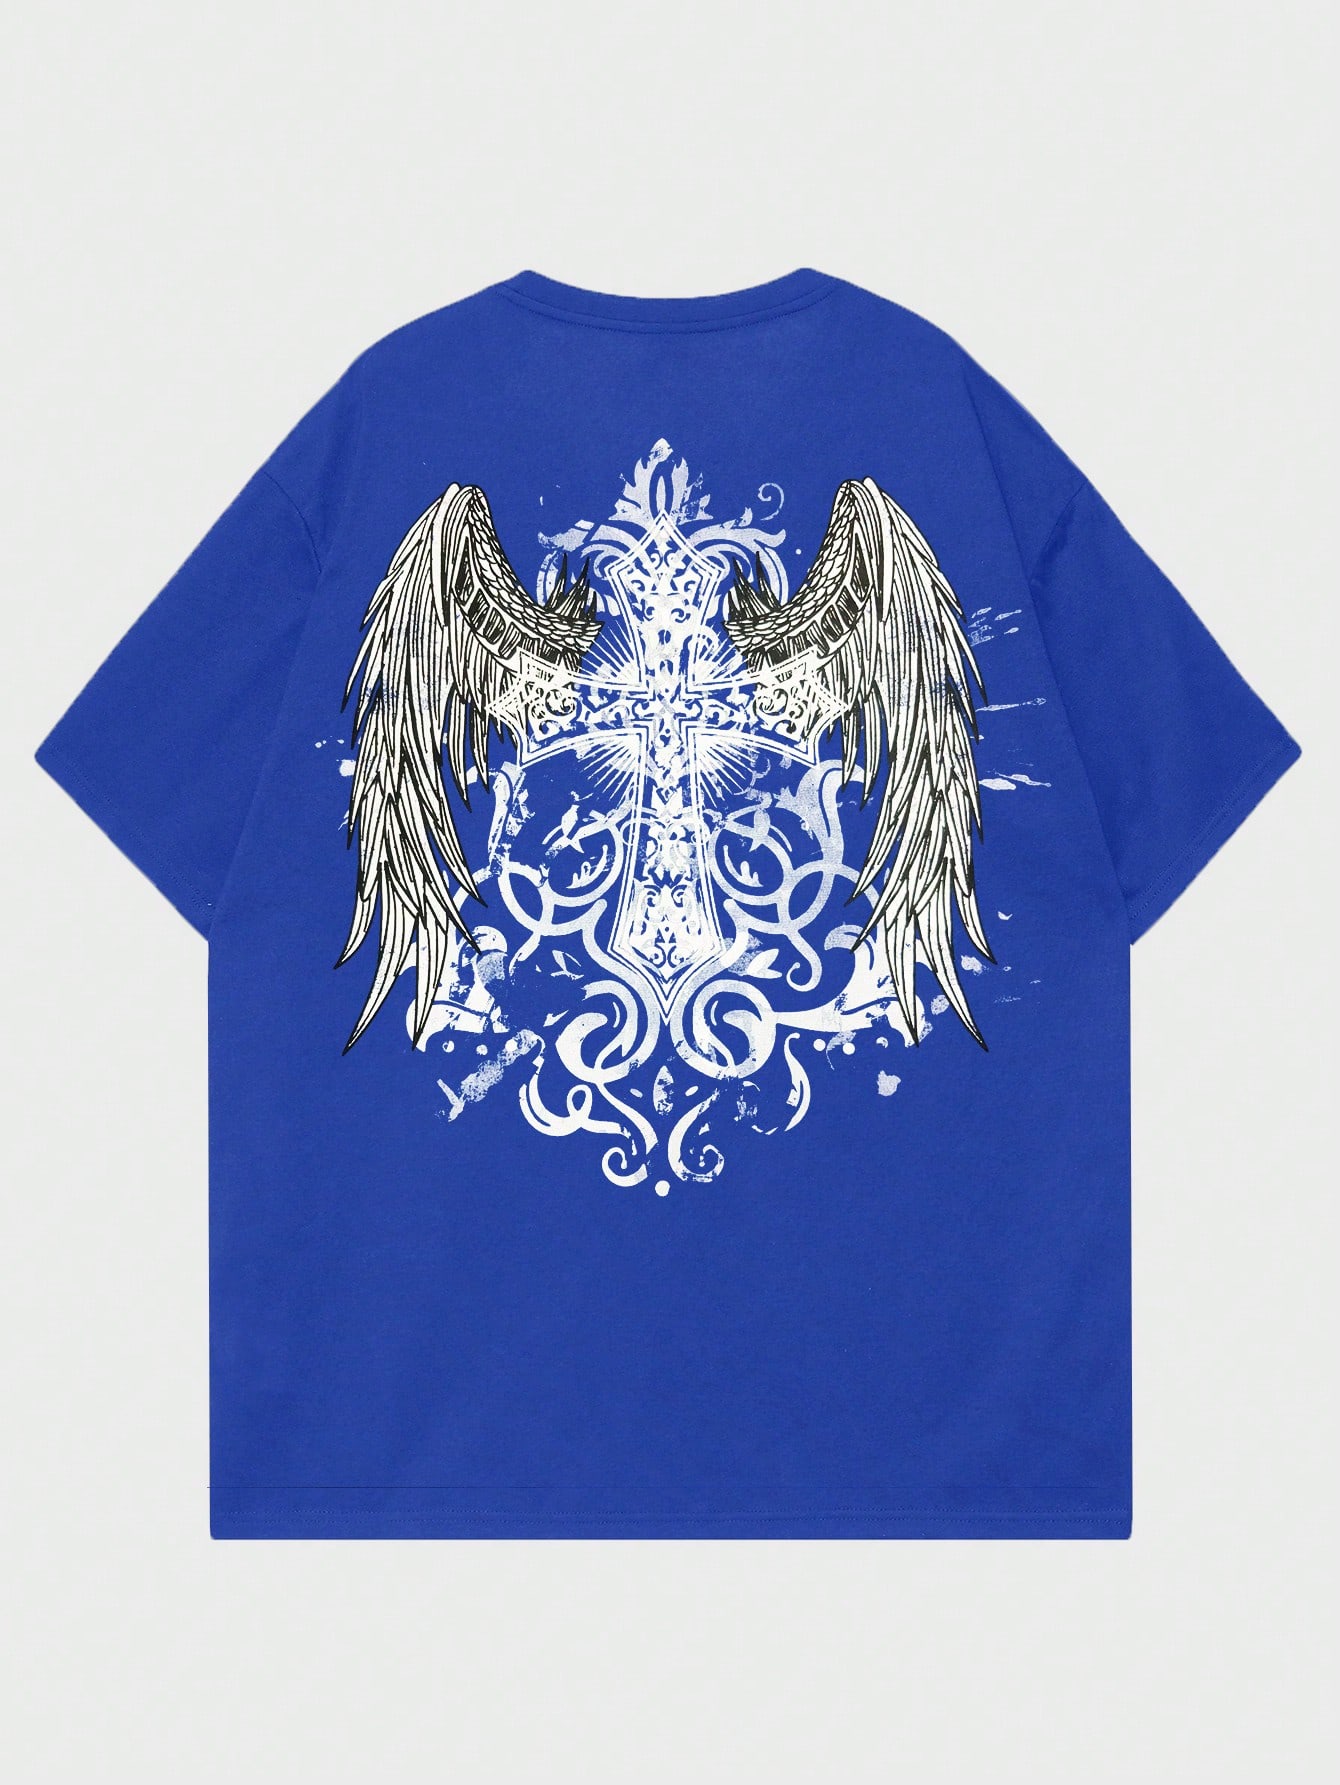 ROMWE Goth Мужская футболка с принтом снежинки и крестом для повседневной жизни, синий машины super wings миссия команды галактические крылья